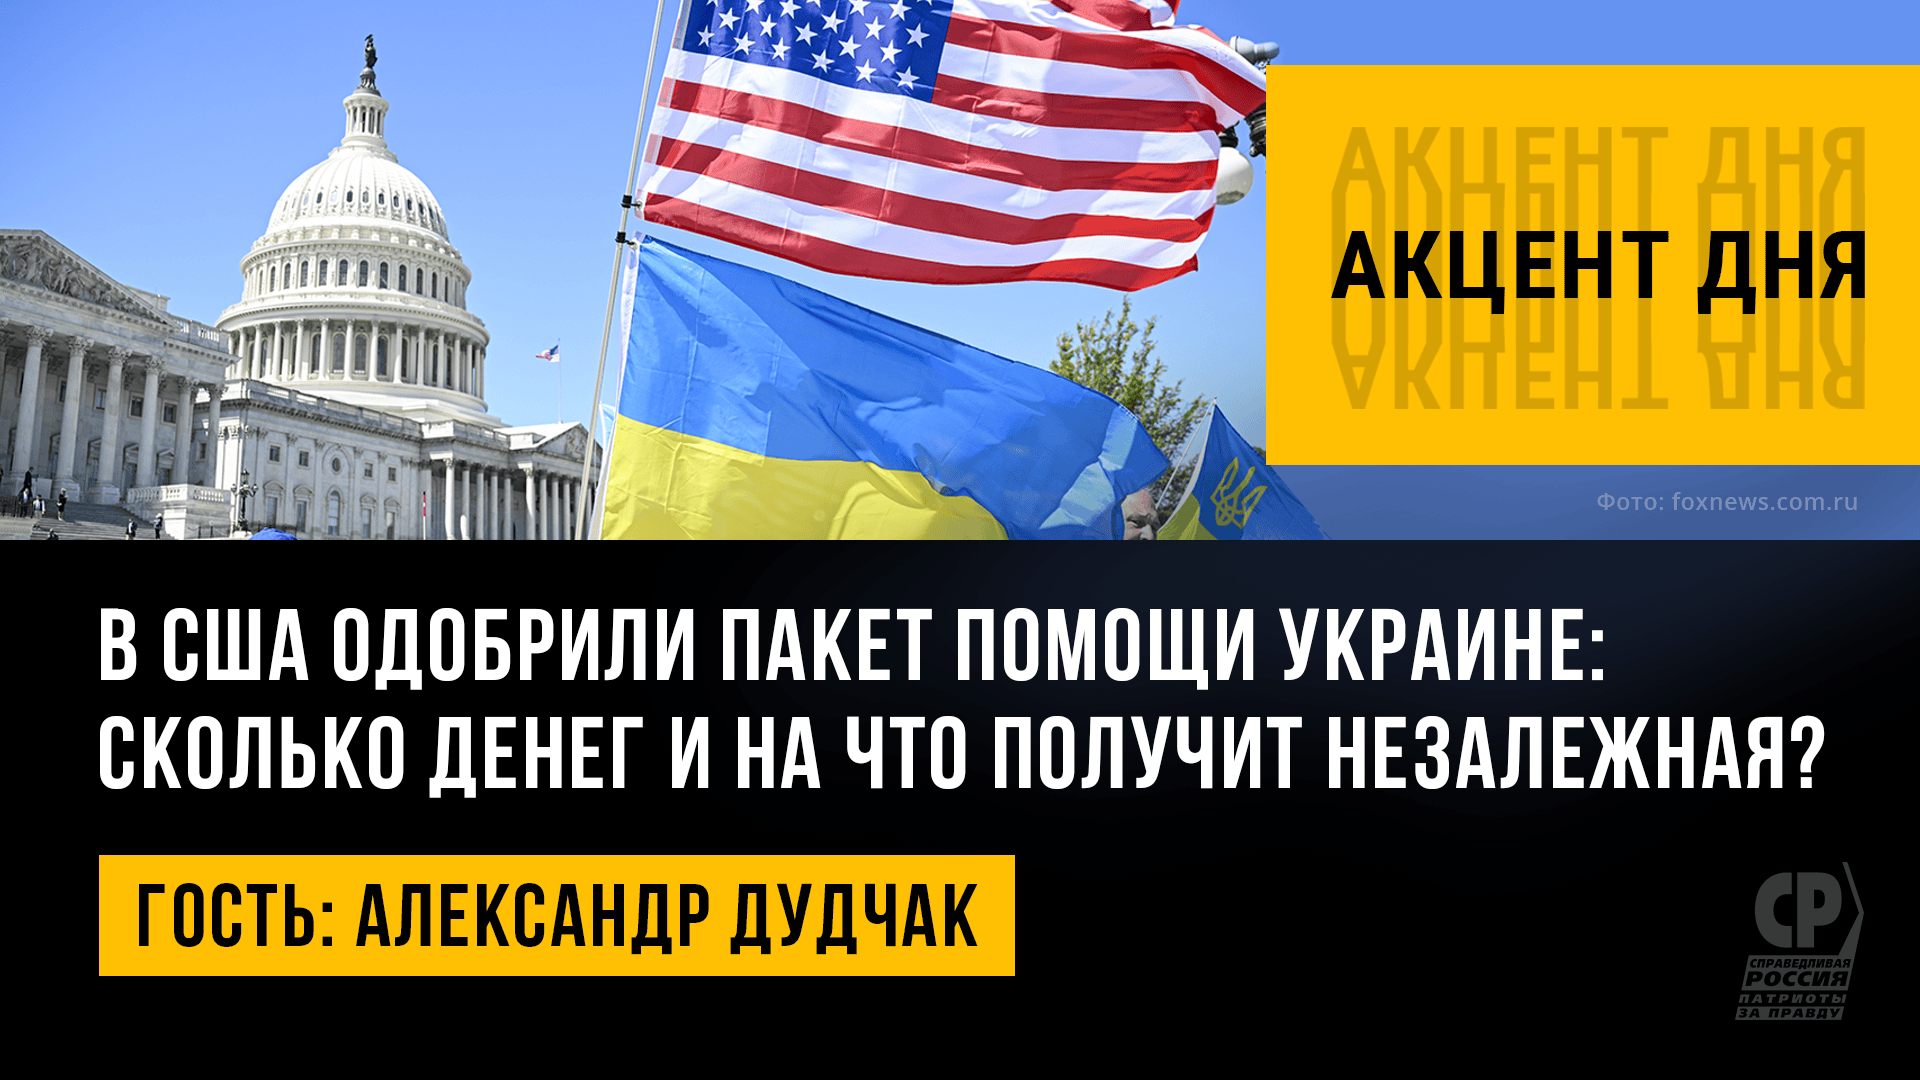 В США одобрили пакет помощи Украине: сколько денег и на что получит Незалежная? Александр Дудчак